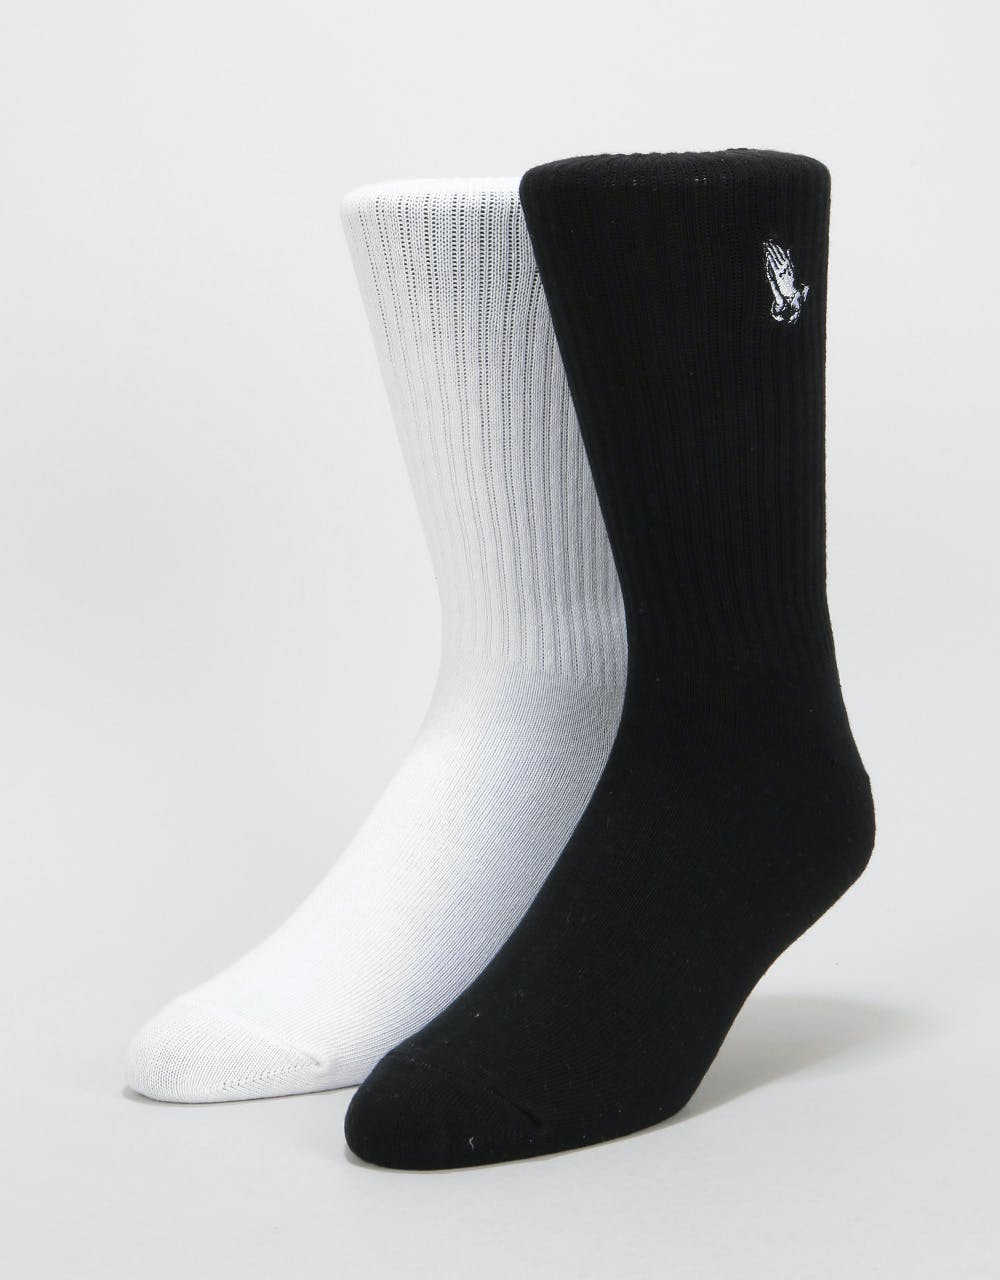 Santa Cruz Pray Socks 2 Pack - Black/White